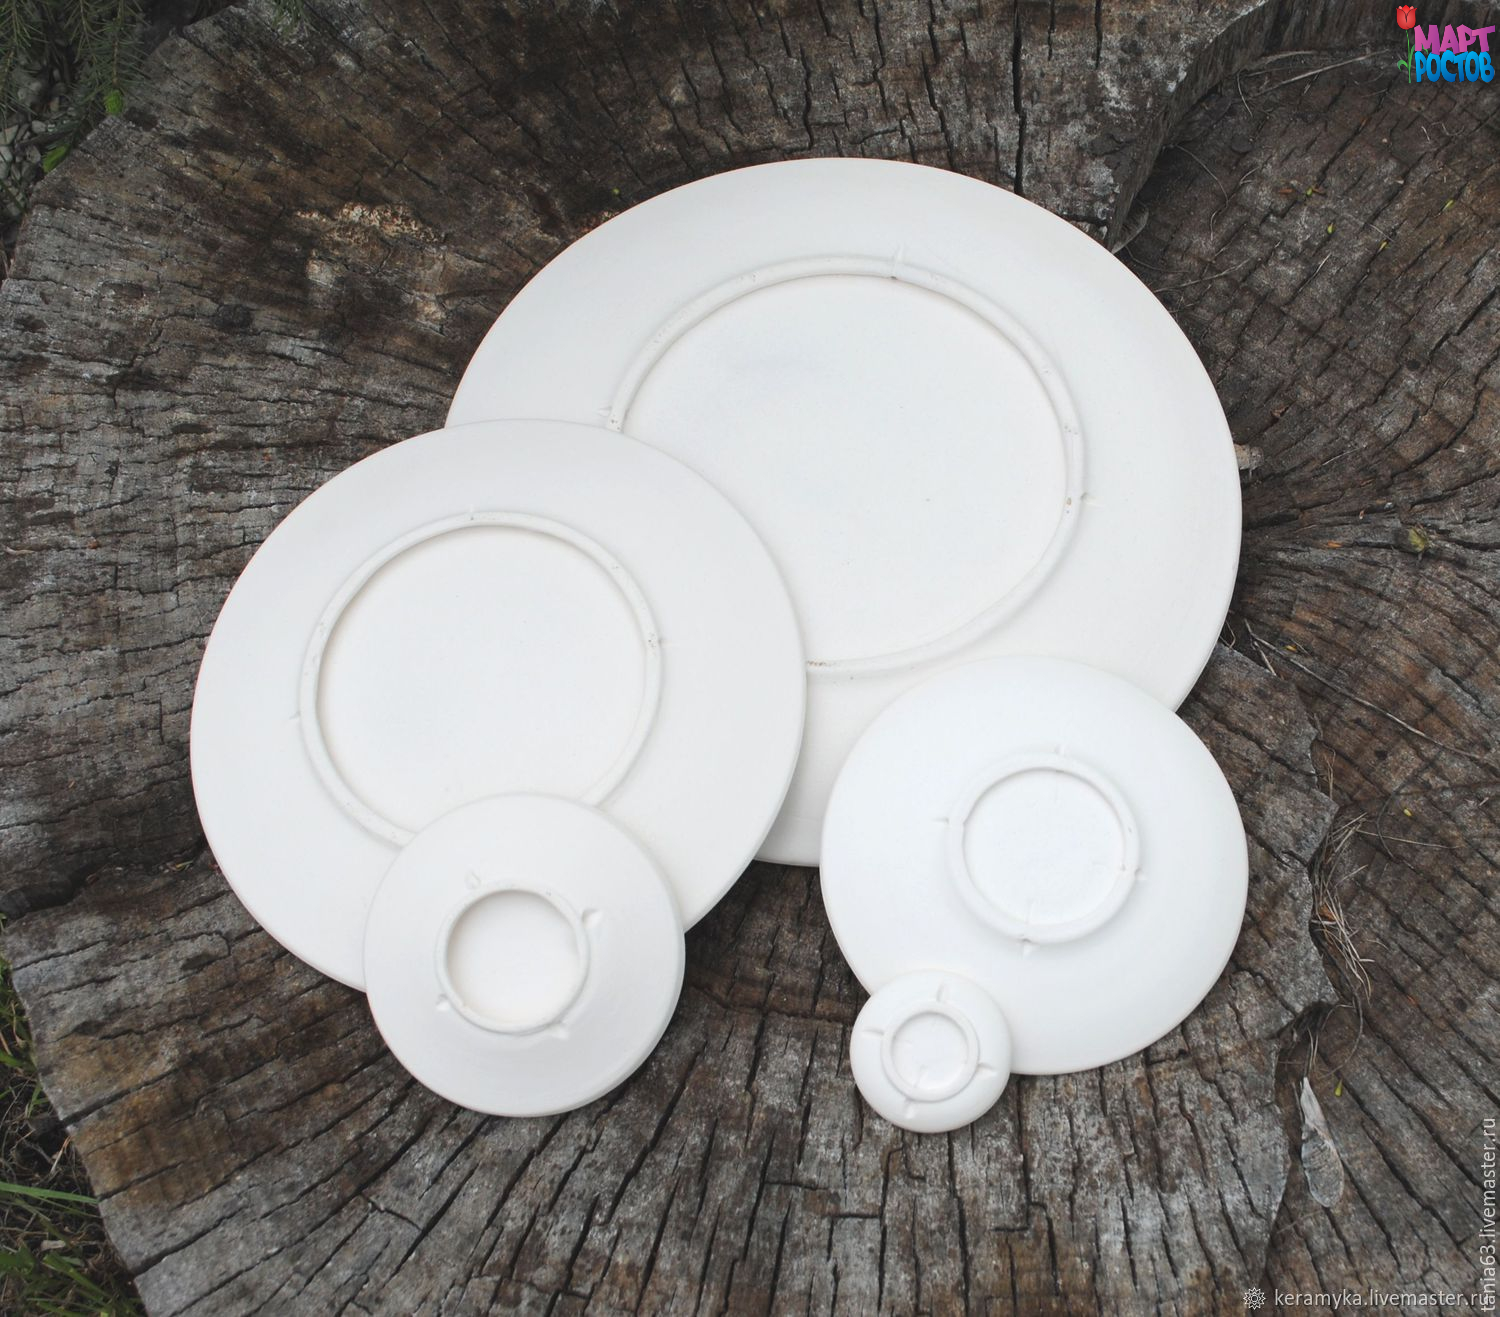 Заготовки керамических тарелок (бельё) 10 см